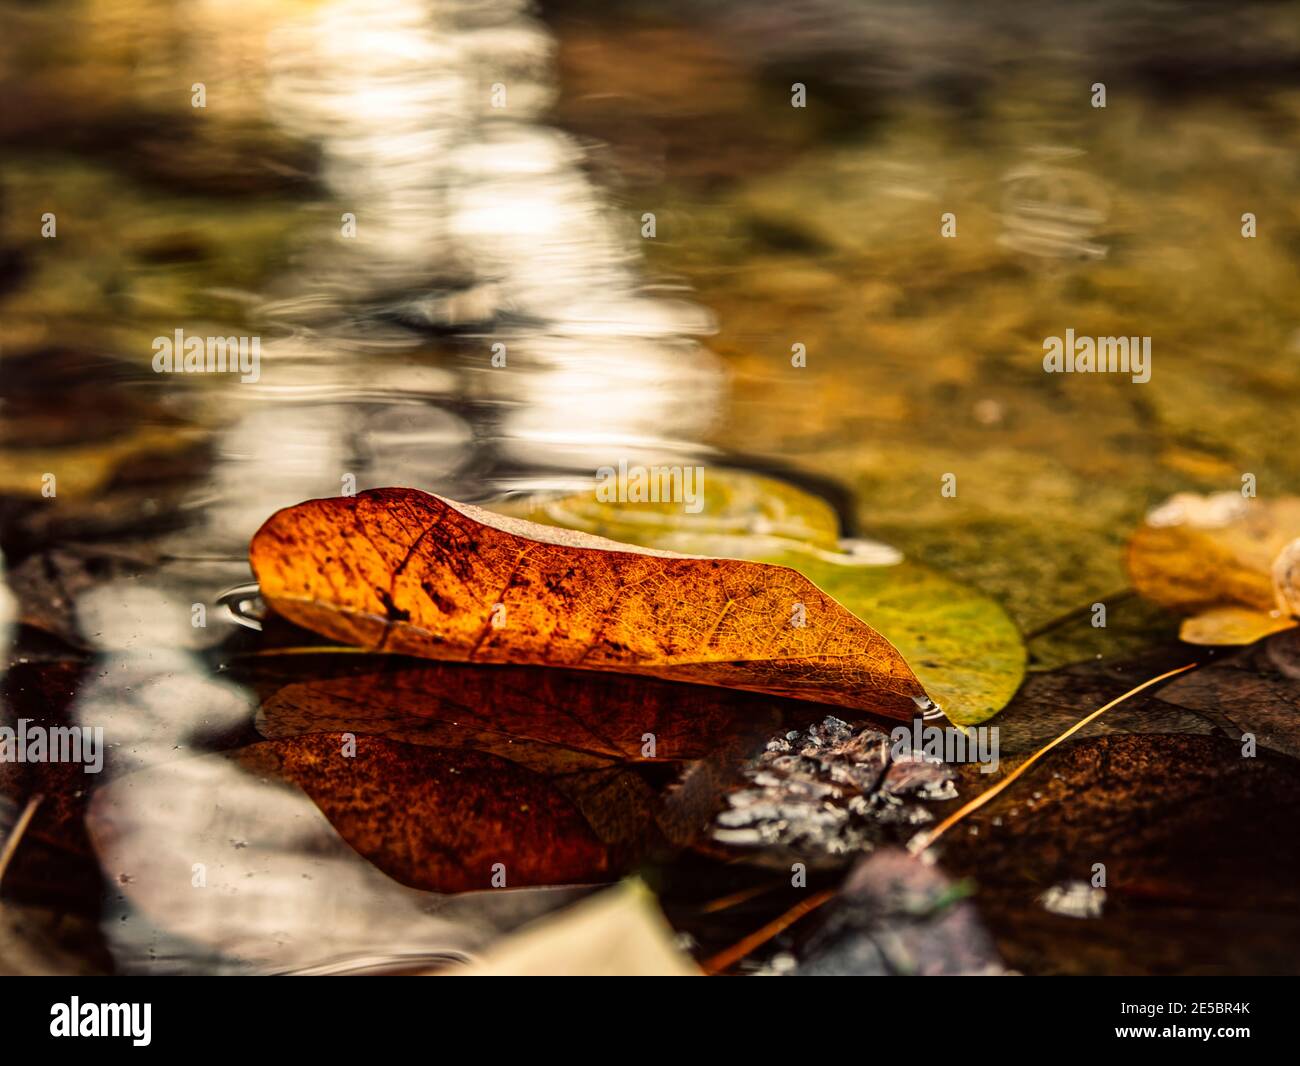 Poco prima di ritornare al grembo comune di tutti noi, una foglia solitaria poggia delicatamente sulla superficie dell'acqua seguendo il percorso della luce. Foto Stock